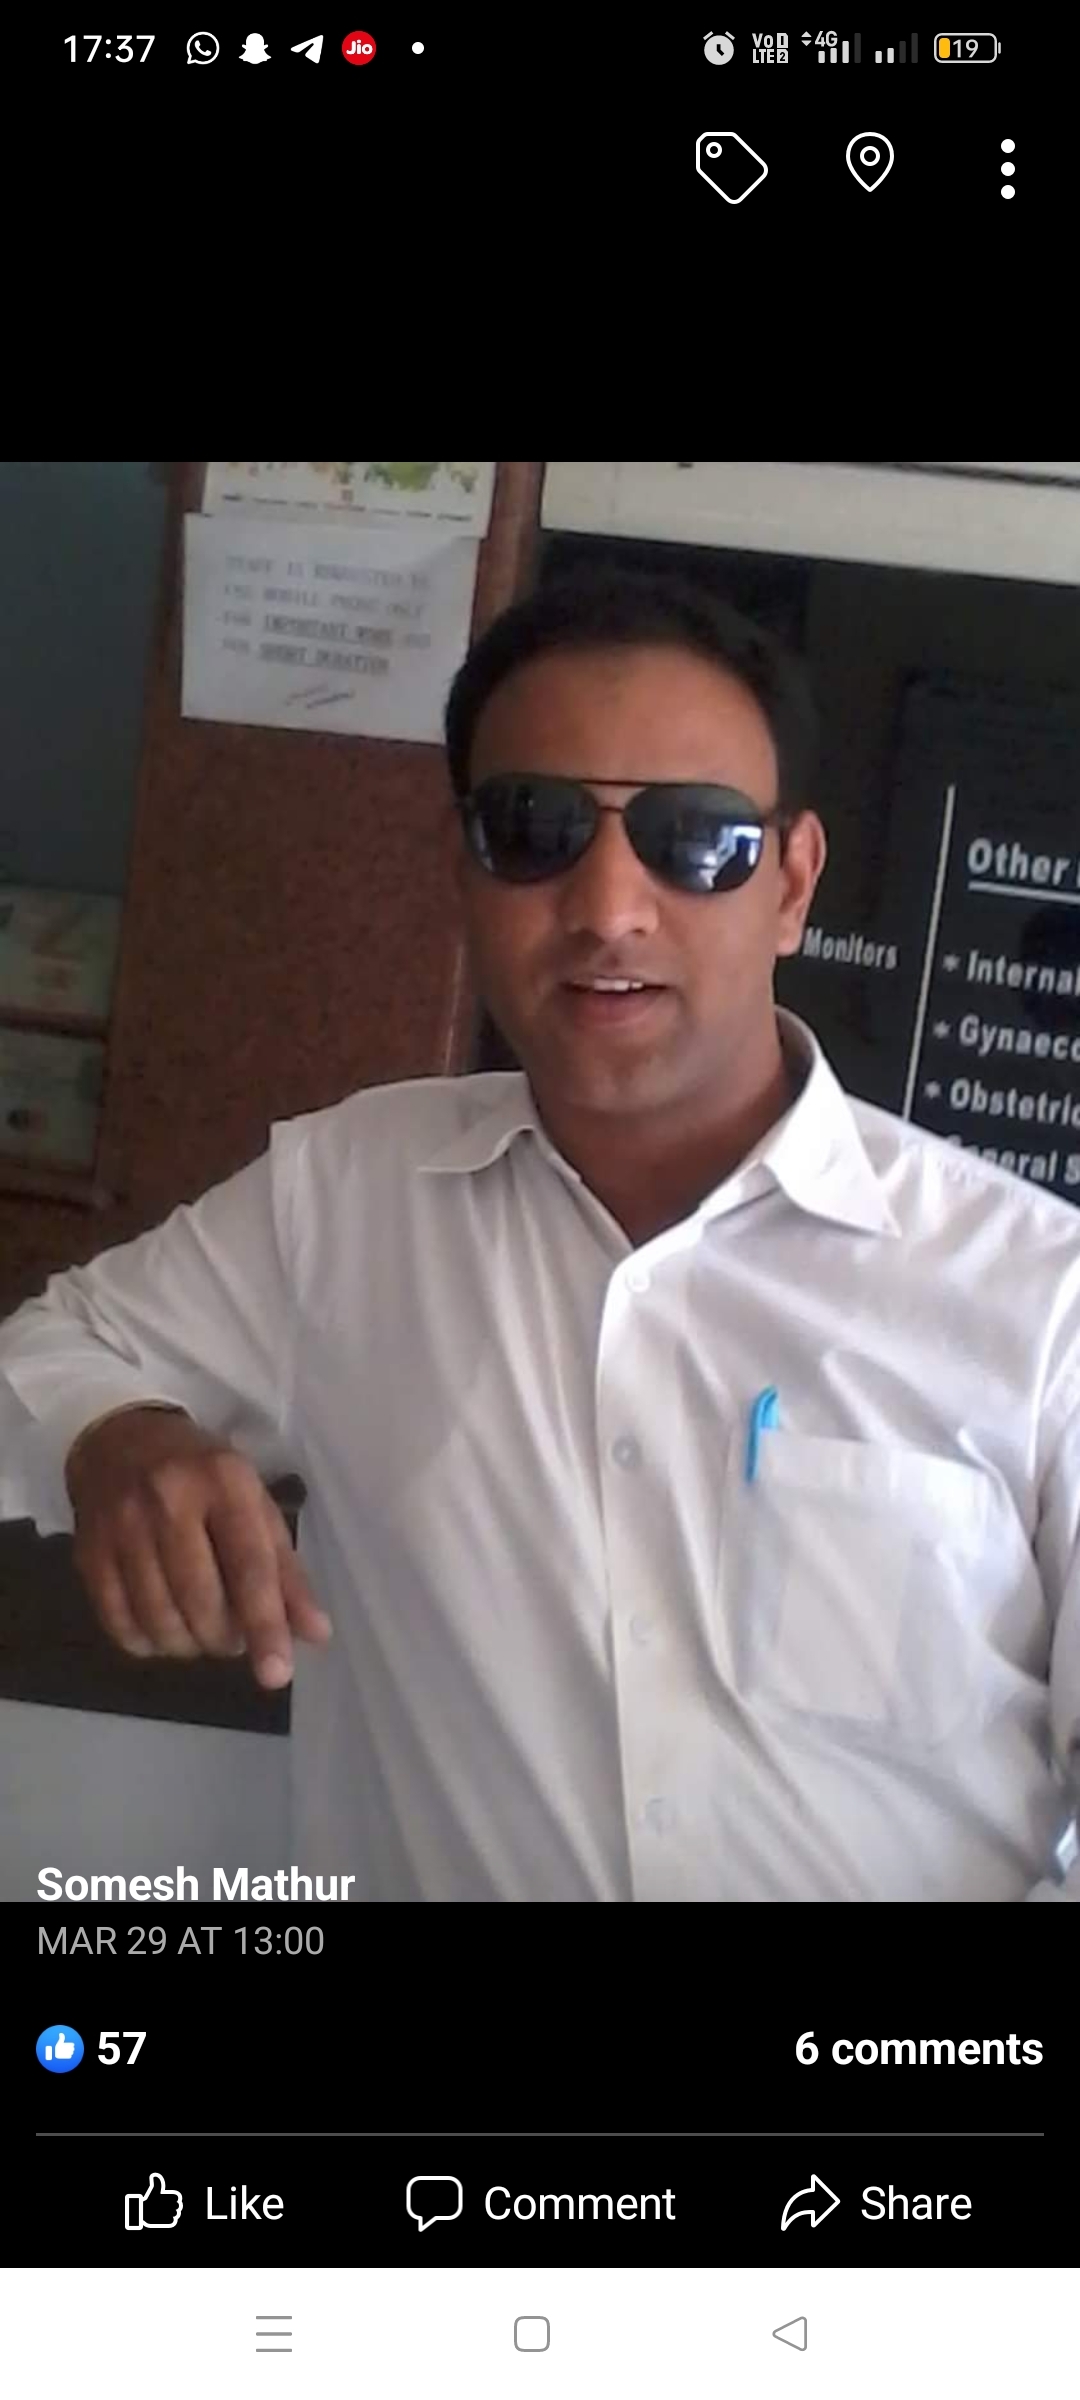 Dr. Somesh Mathur